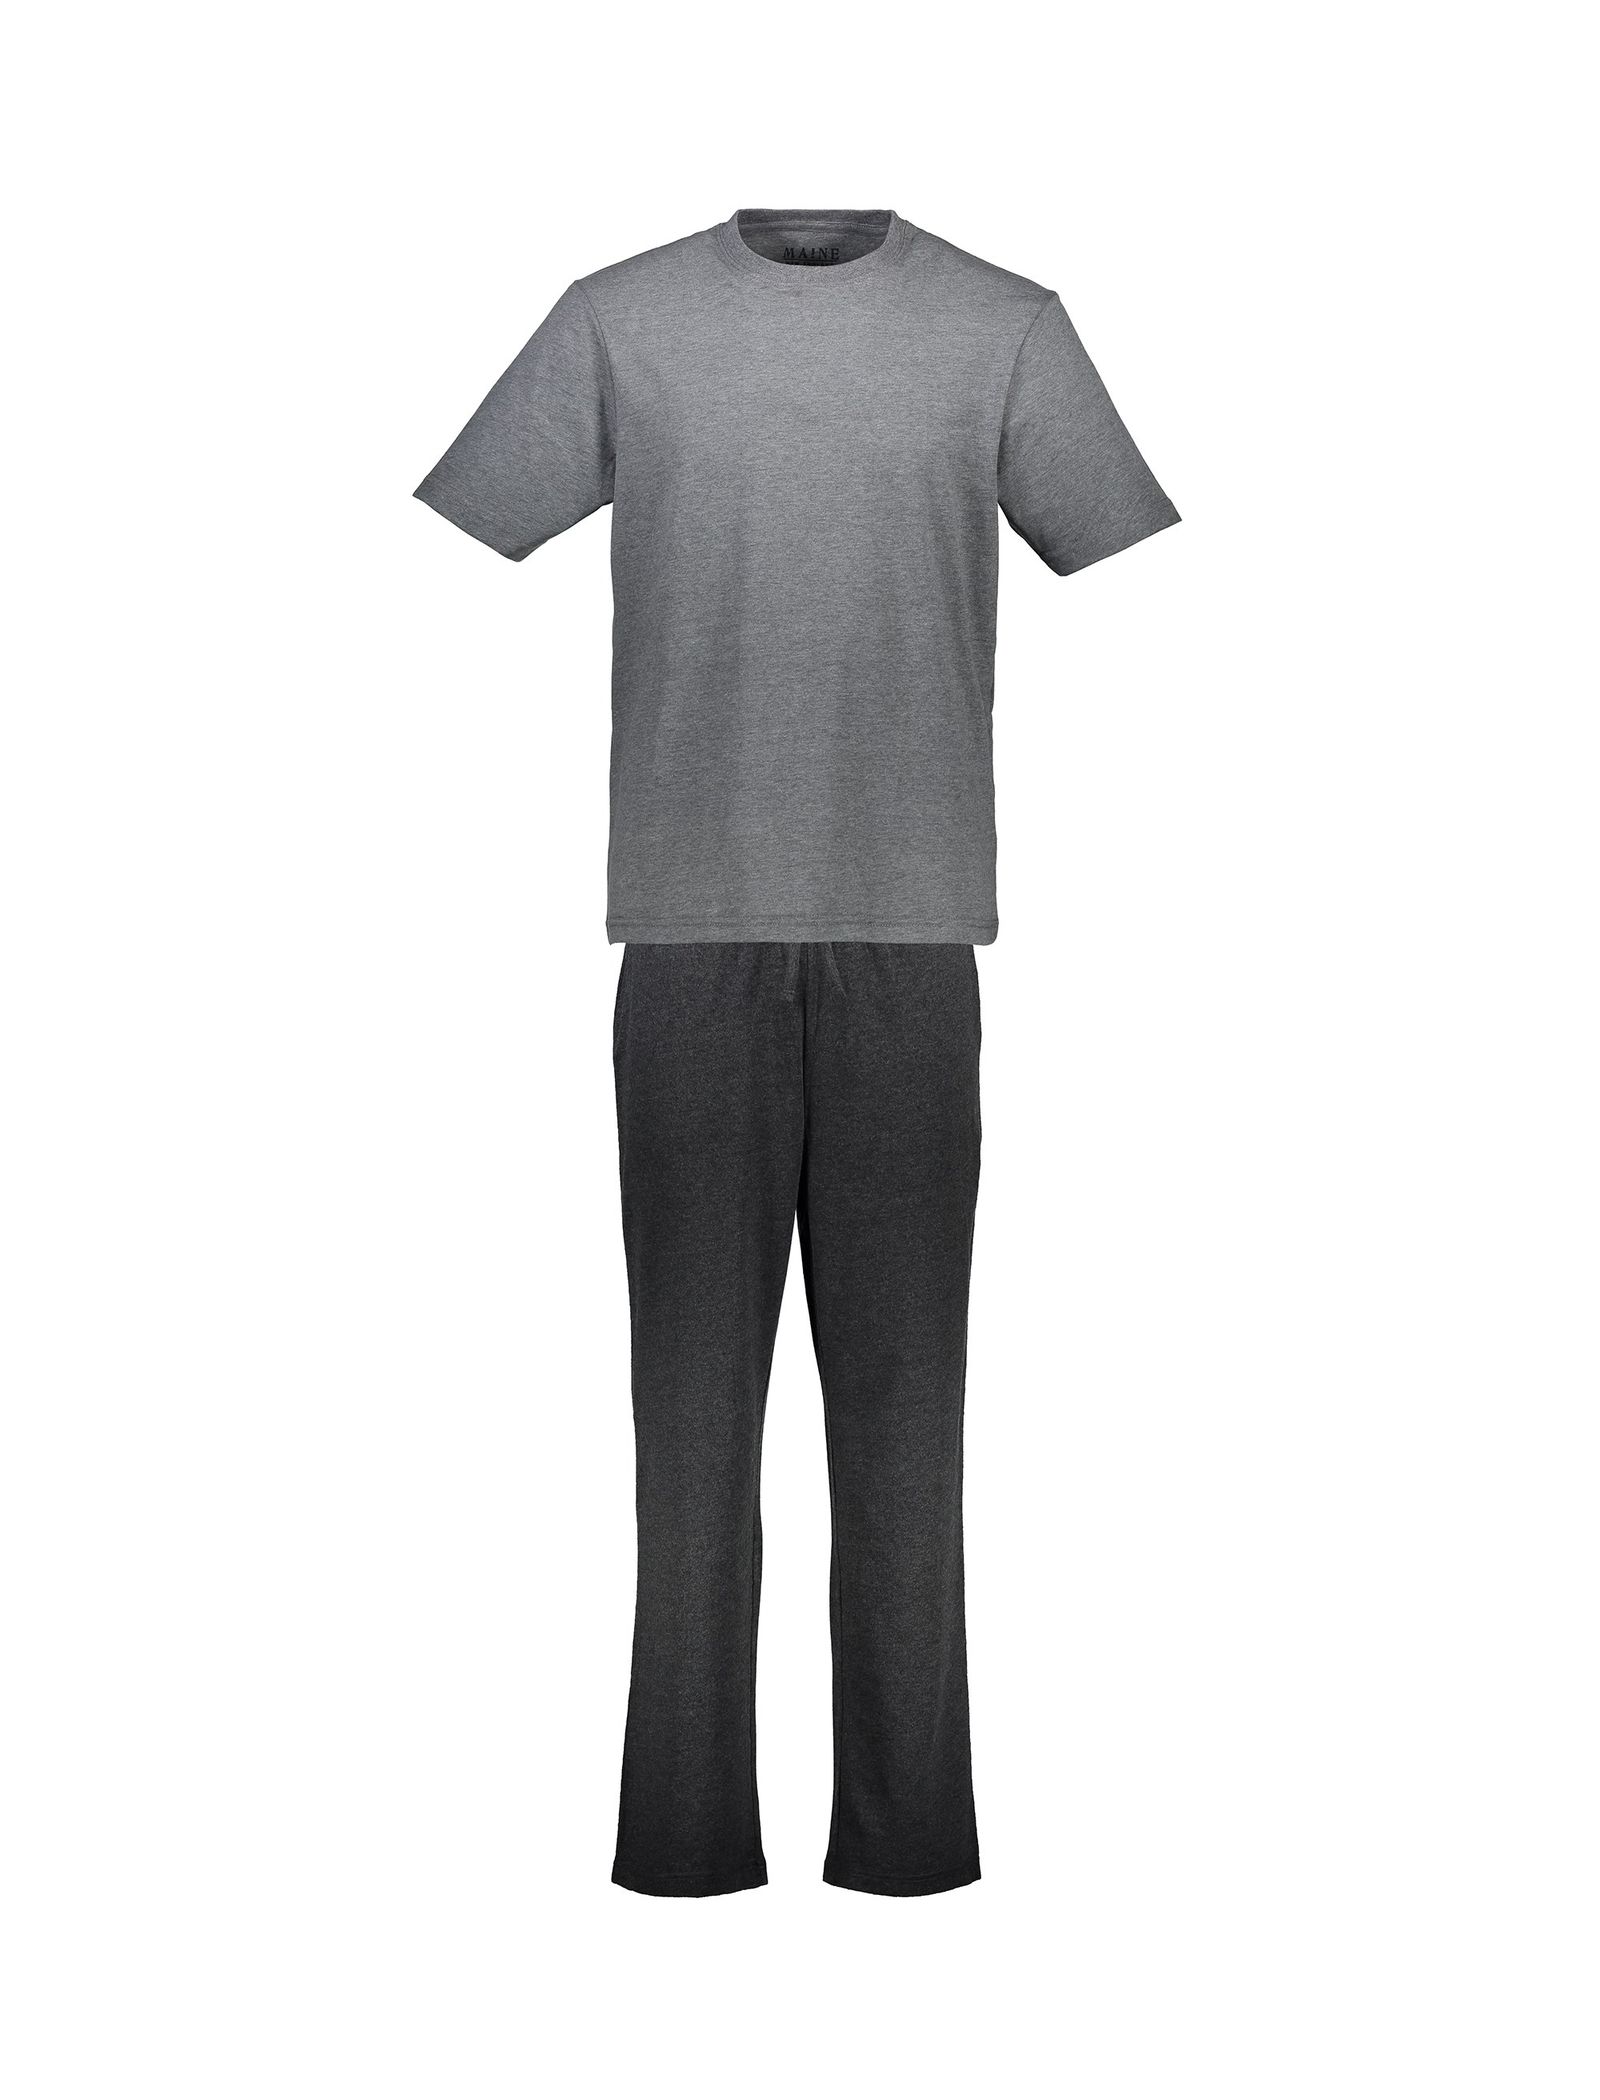 تی شرت و شلوار راحتی نخی مردانه - مین نیو اینگلند - طوسي - 2